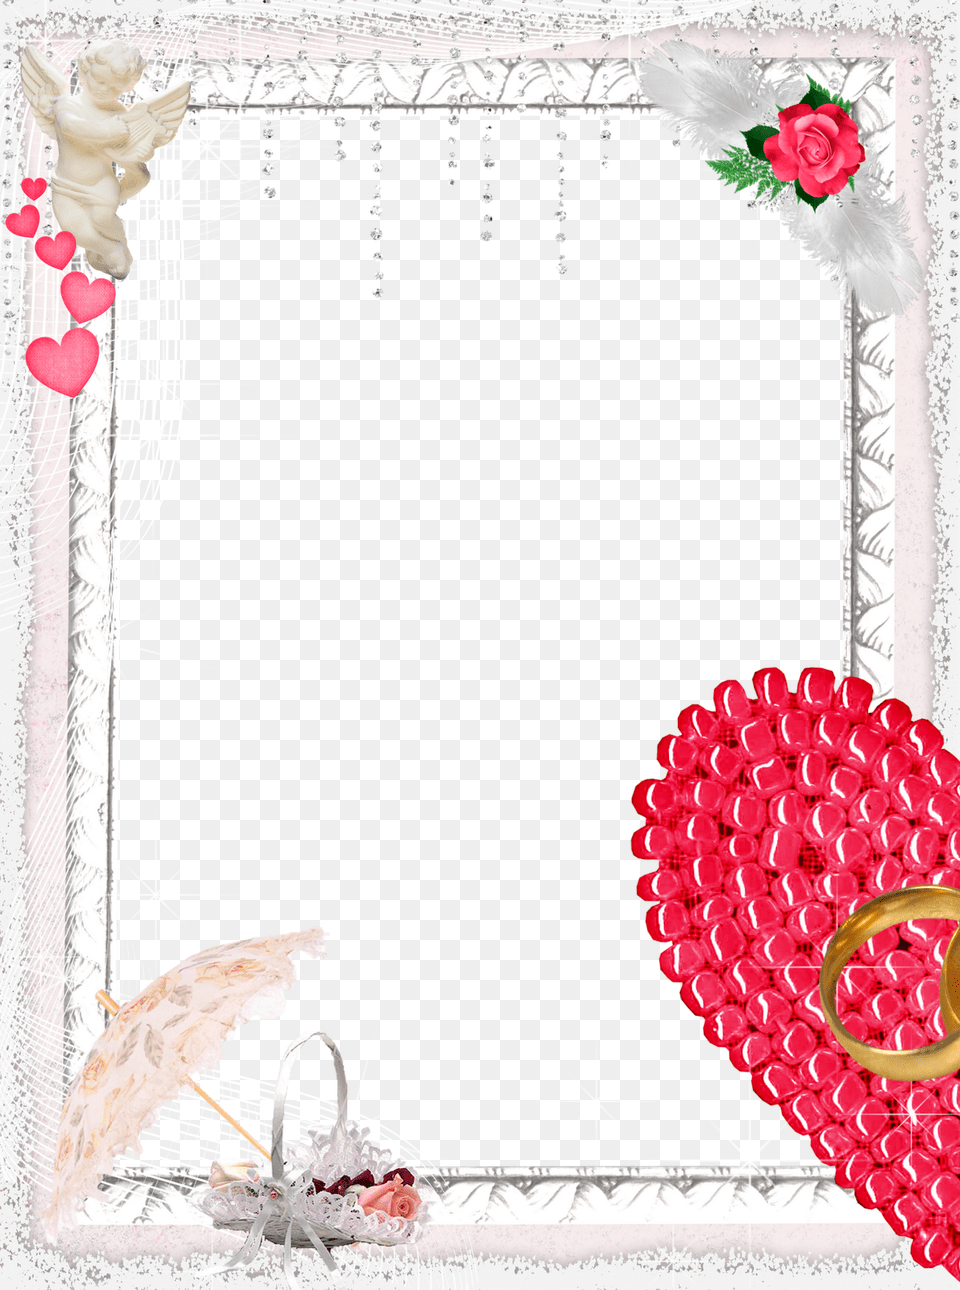 Wedding Frames Download Wedding Frames Hd, Envelope, Mail, Greeting Card, Rose Png Image